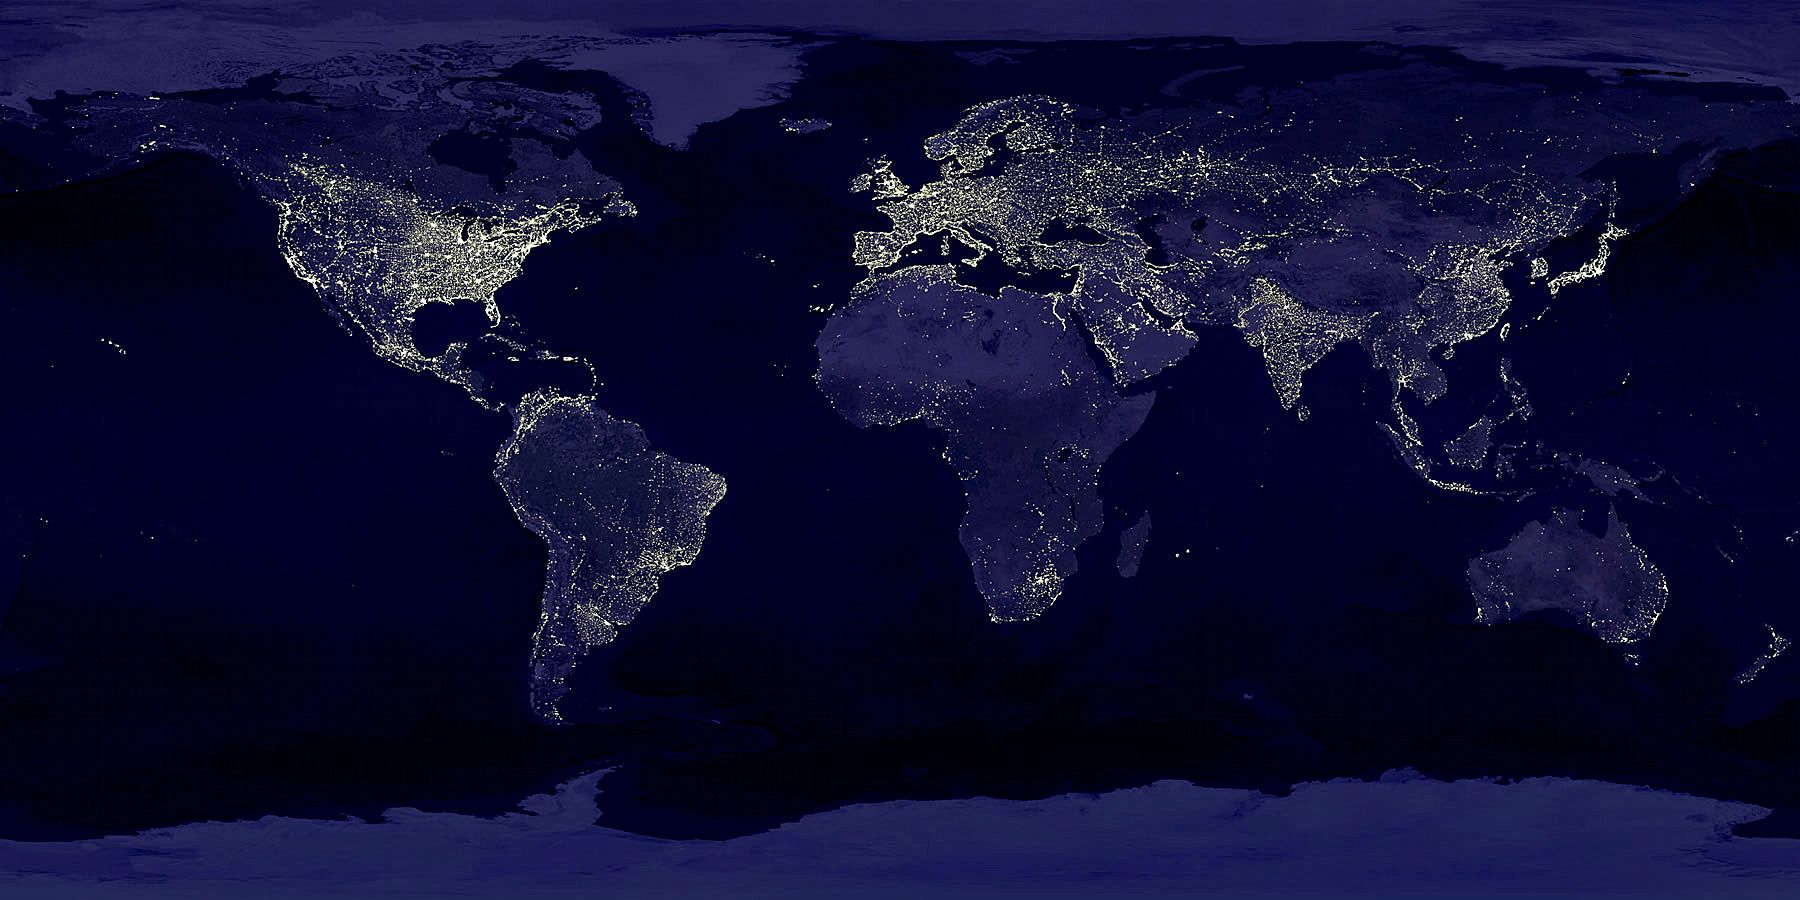  photo night satellite world-at-night-lg_zpsa9vf2qby.jpg